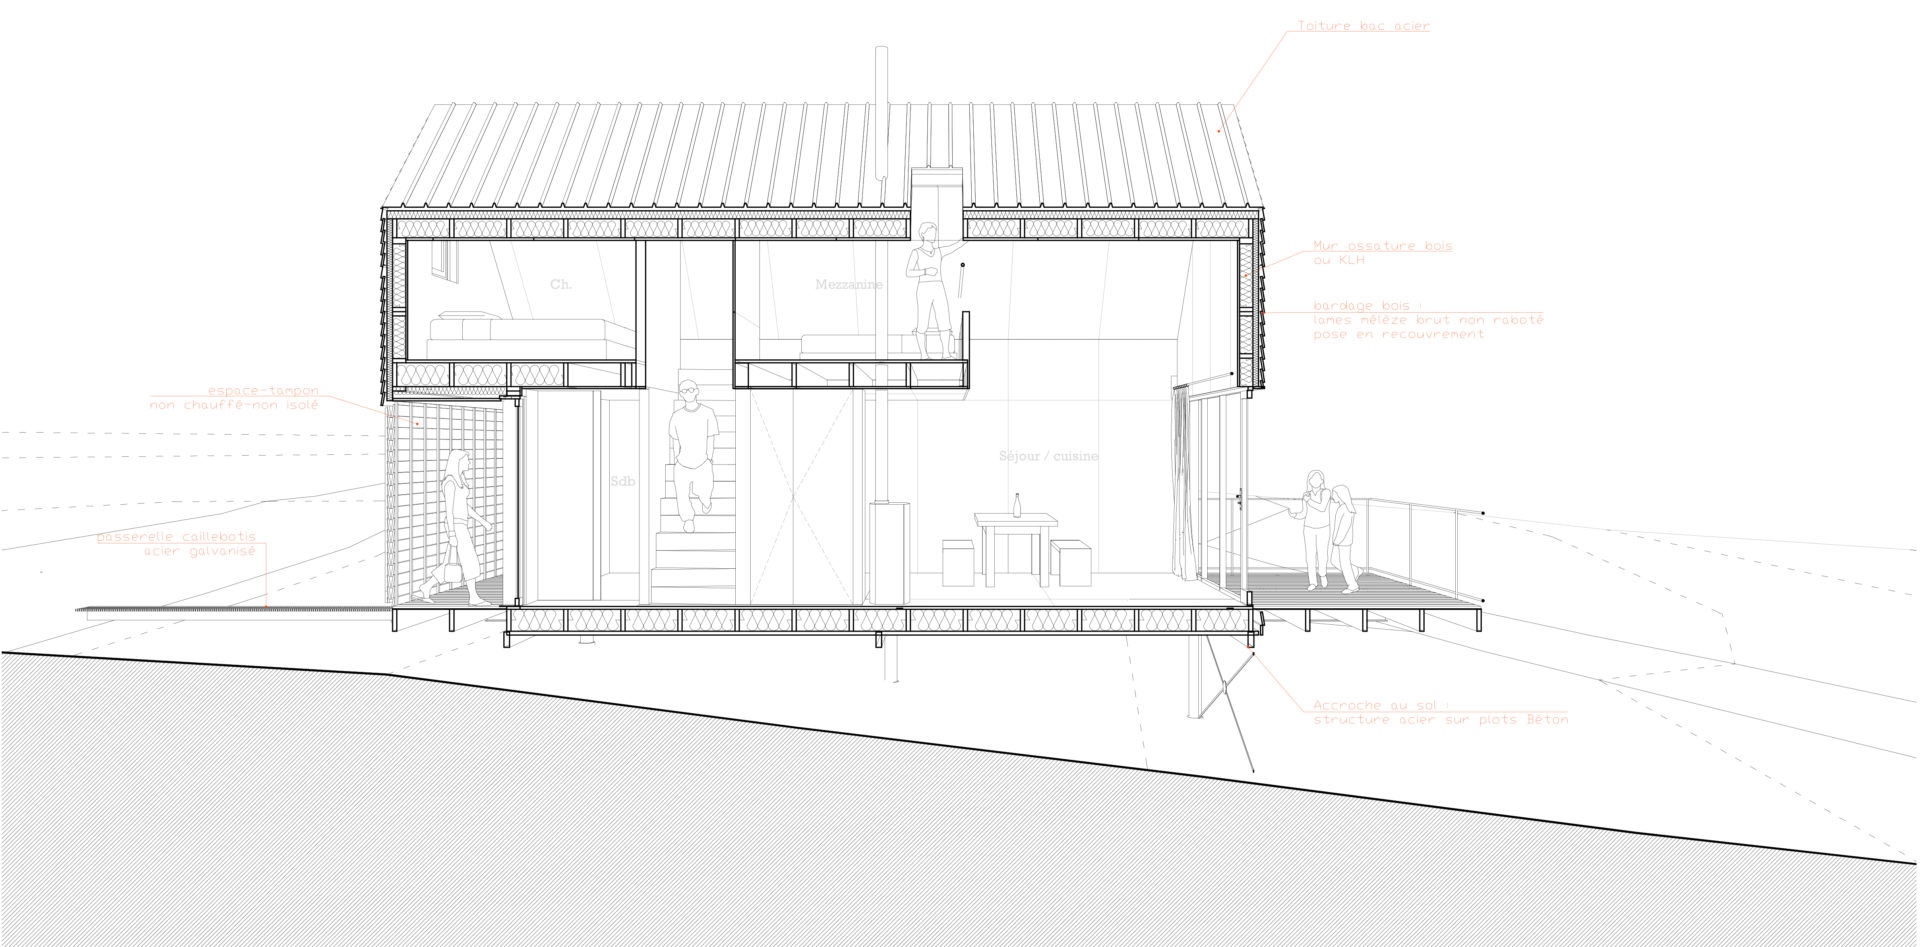 maison-contemporaine-toiture-terrasse-bois-metal-brique-piscine-spa-2